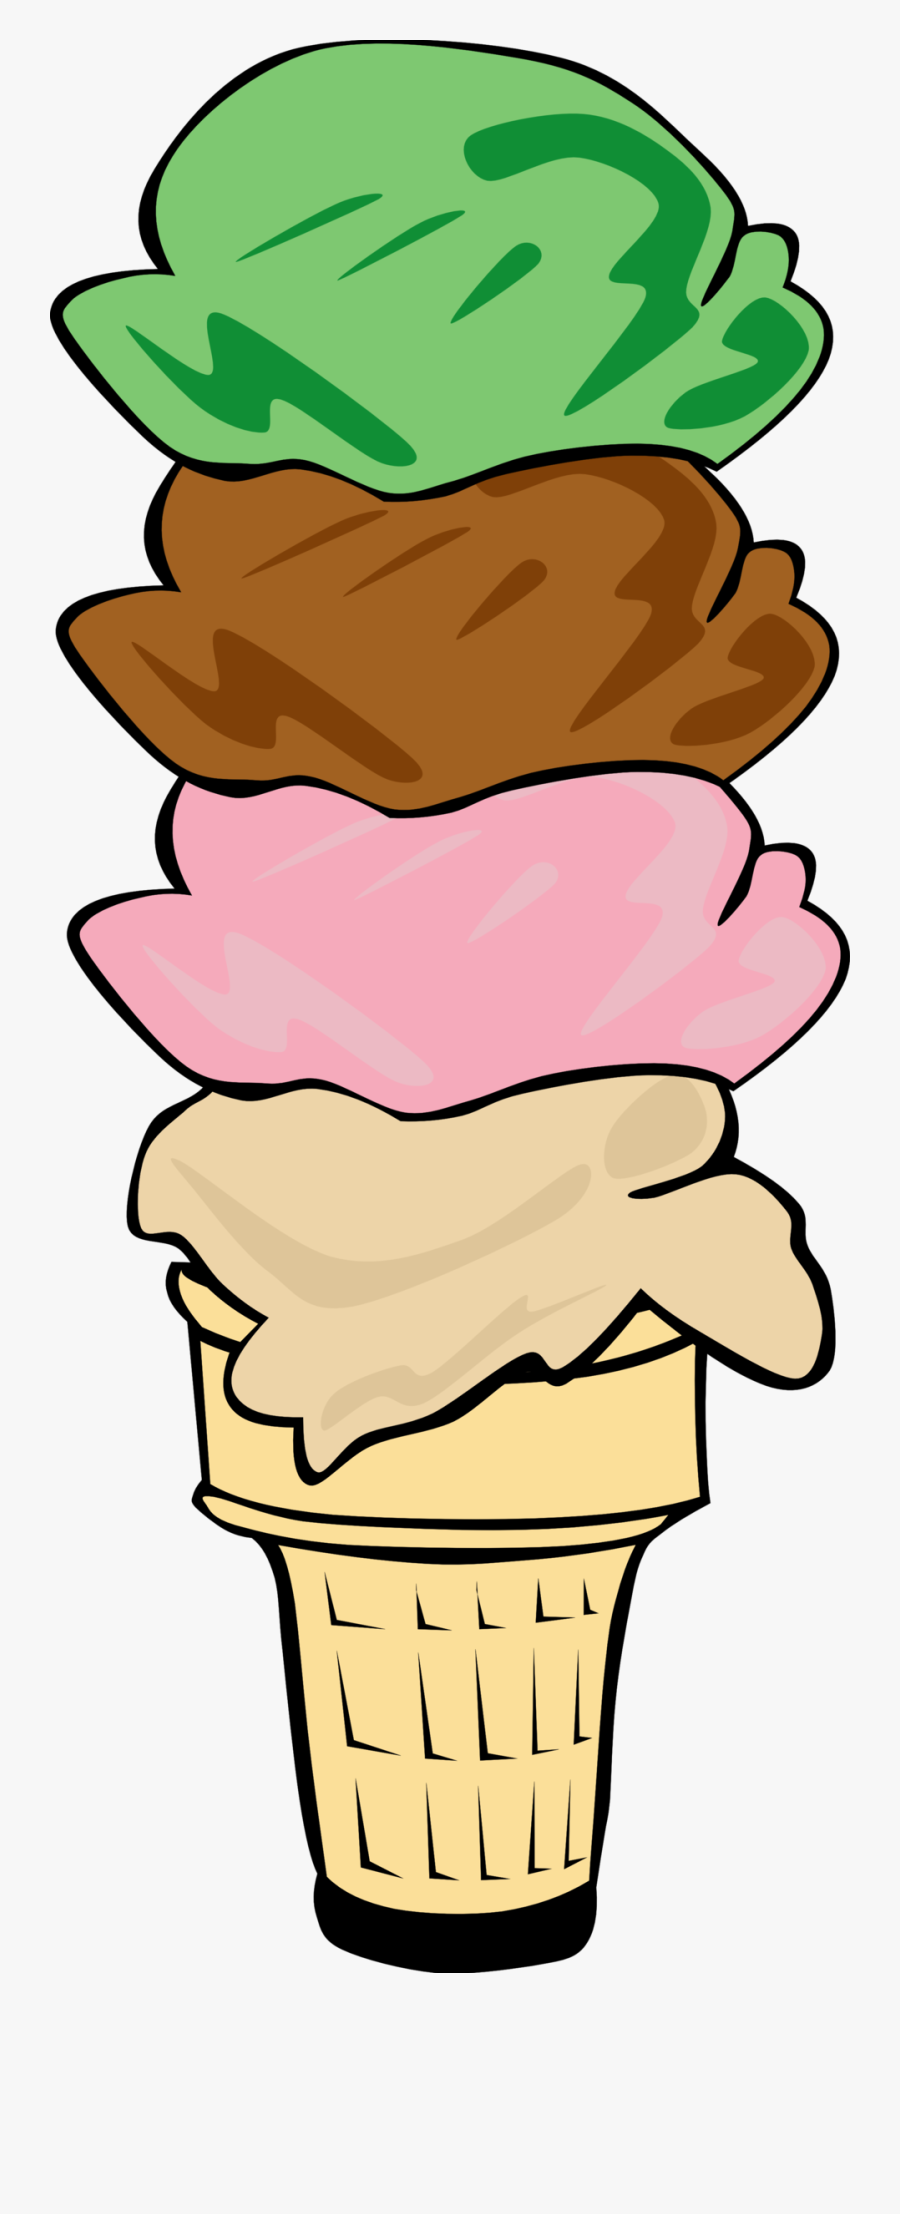 Ice Cream Social Clip Art - Ice Cream Cone Clip Art, Transparent Clipart